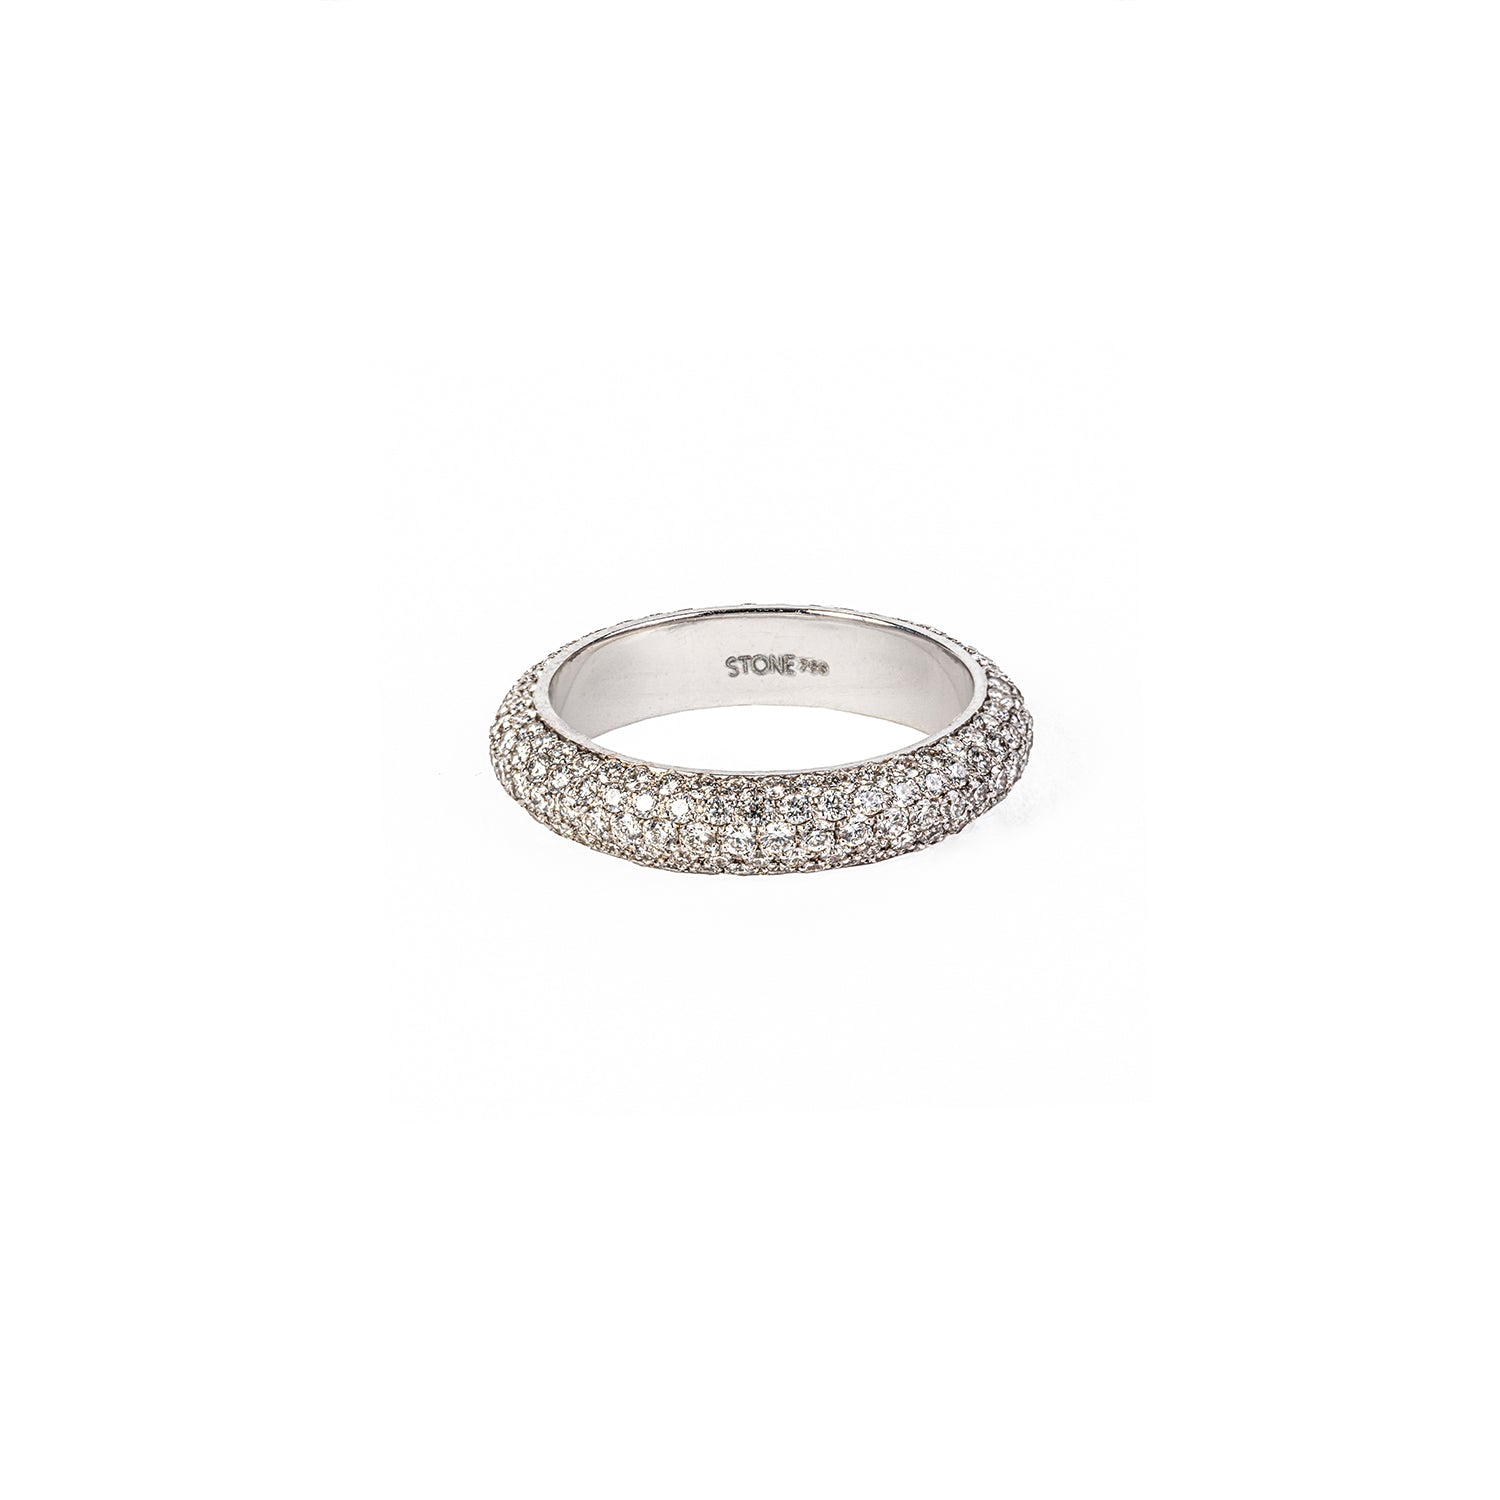 Thin White Dome Diamond Ring